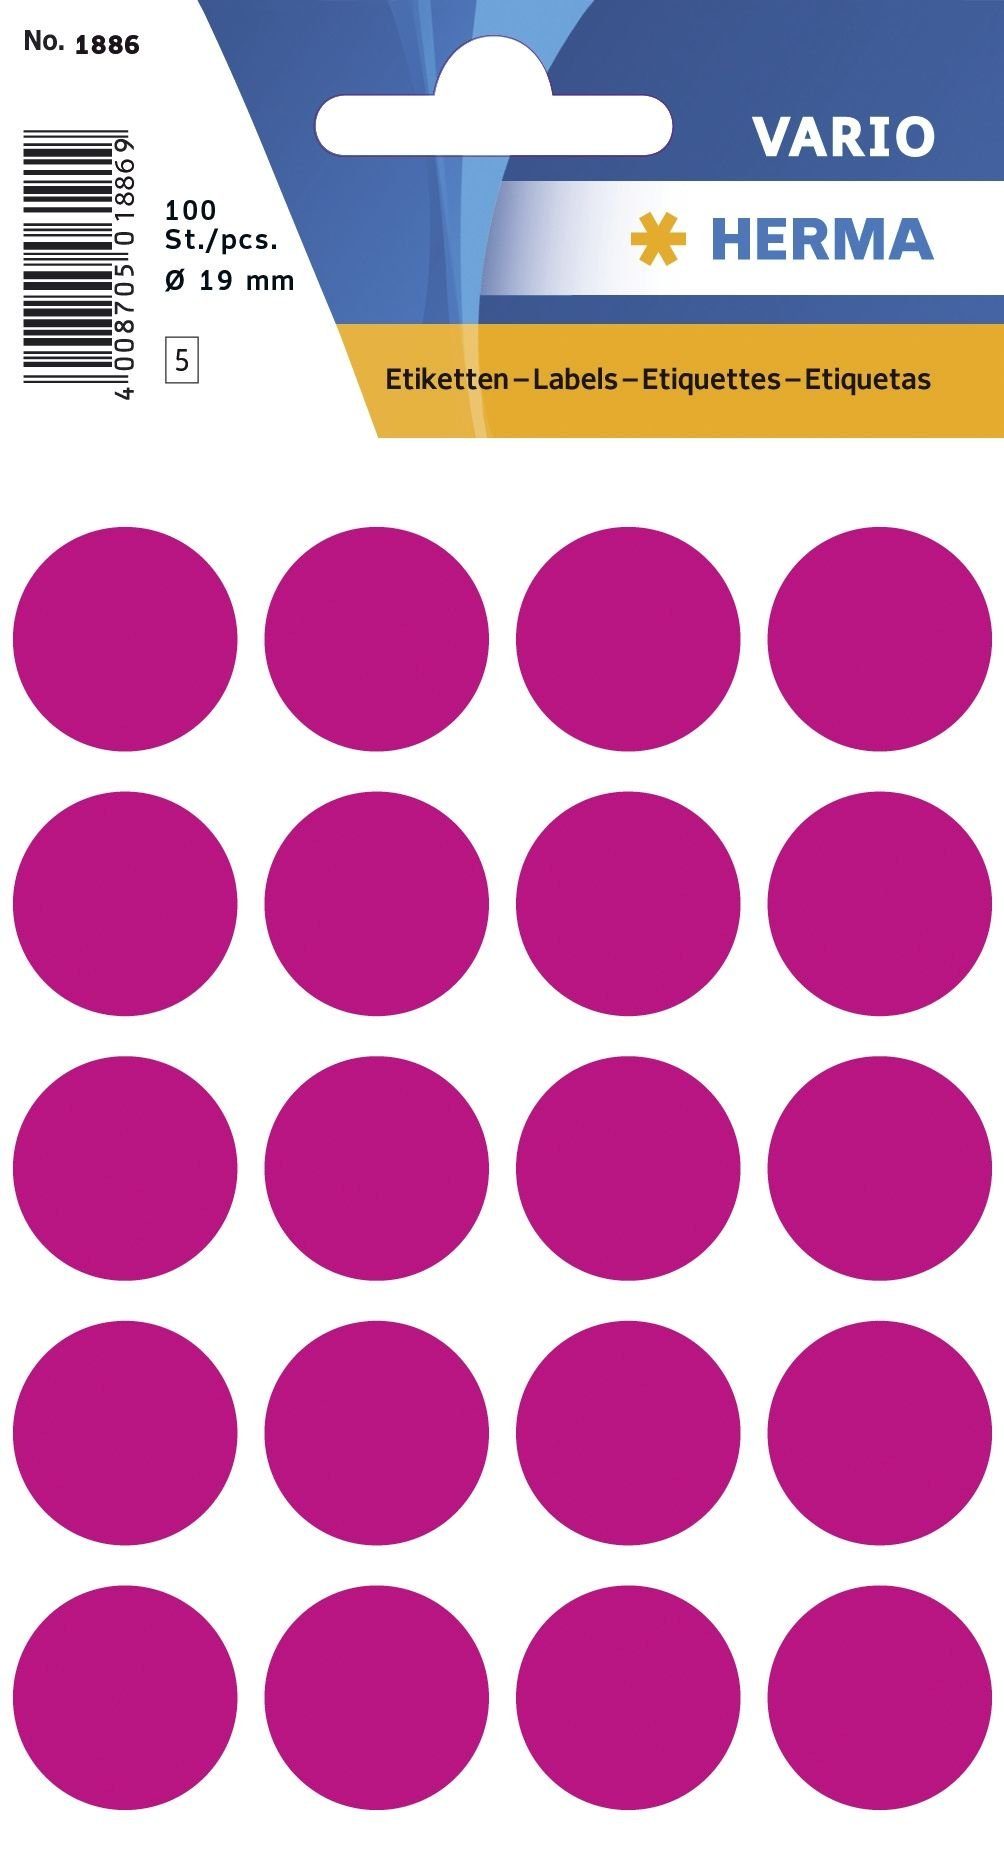 HERMA Klemmen HERMA Markierungspunkte, Durchmesser: 19 mm, pink